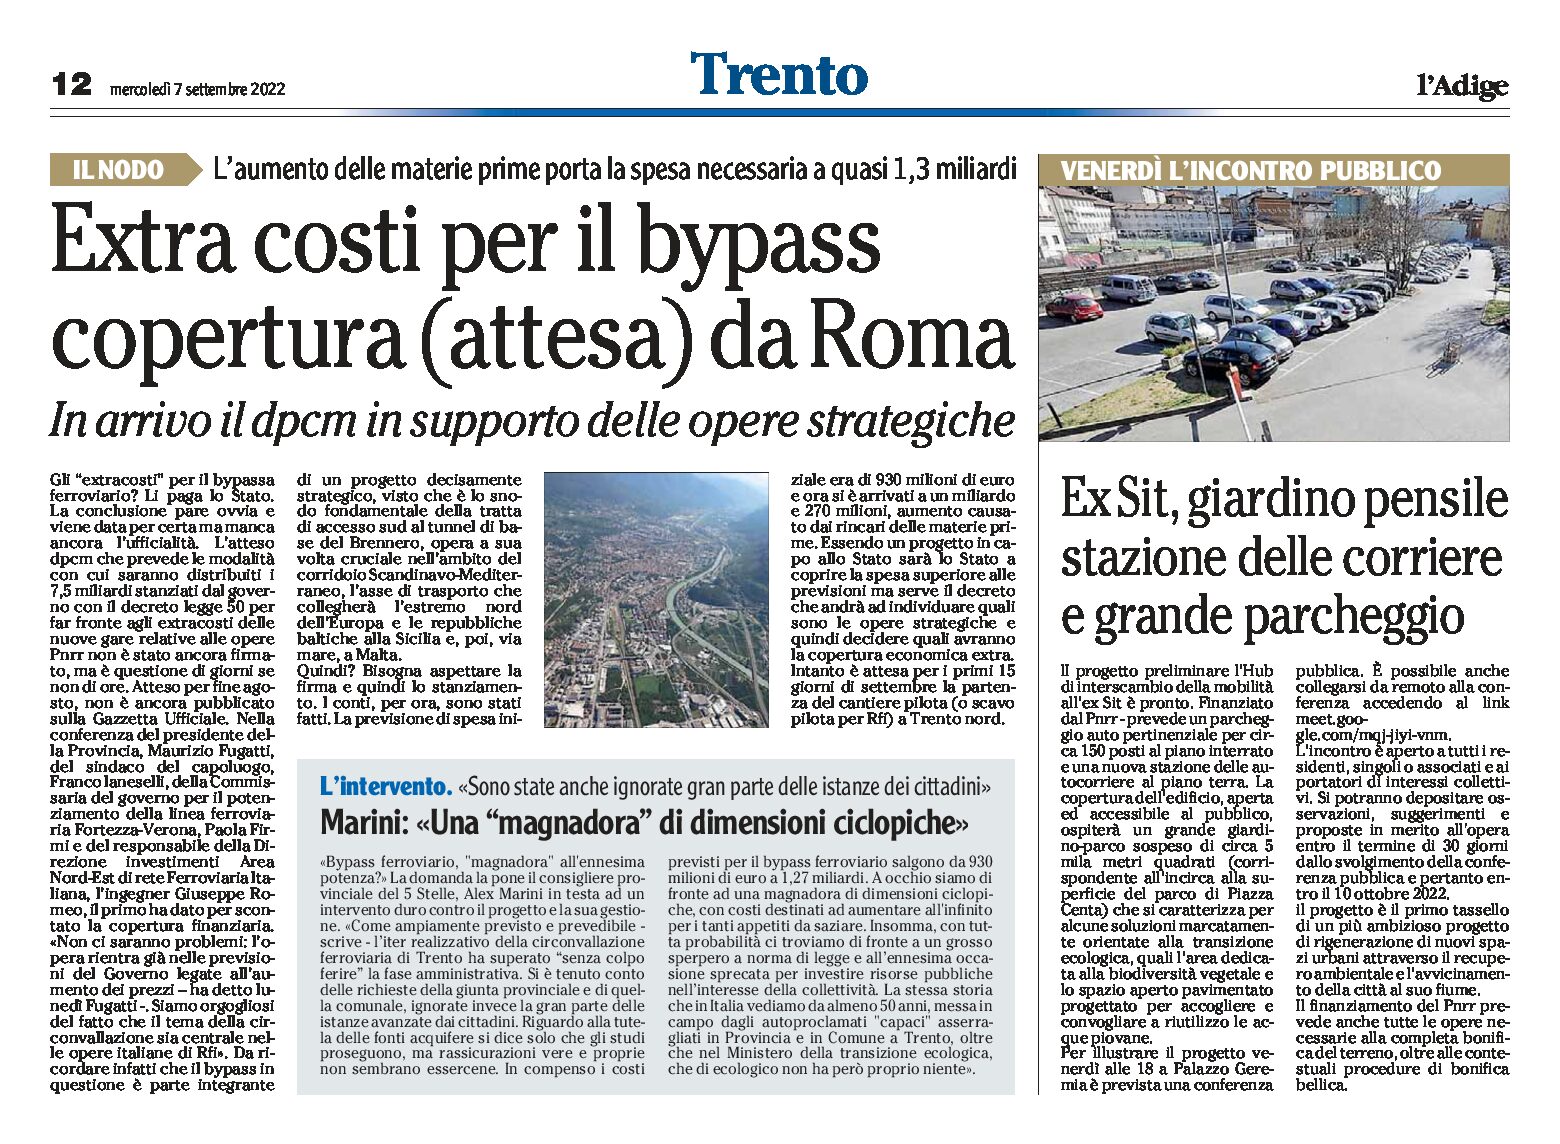 Trento: extra costi per il bypass, copertura (attesa) da Roma